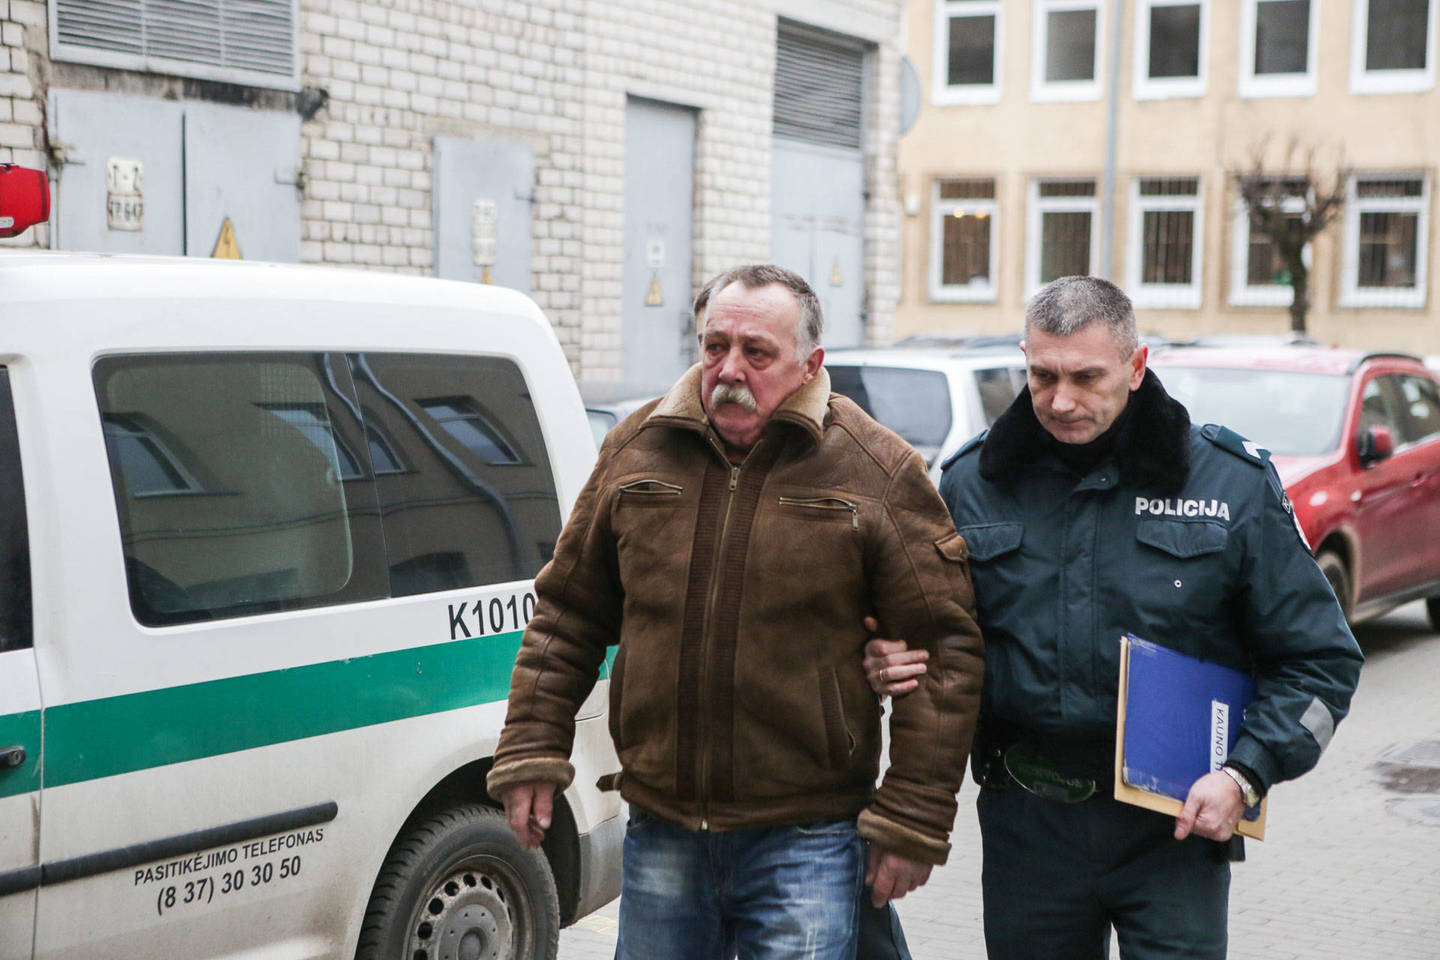  Praėjus parai nuo žmogžudystės Kaune prie parduotuvės, pareigūnai sulaikė šiuo nusikaltimu įtariamą R.Orantą.  Ketvirtadienį jis buvo atvestas į teismą dėl suėmimo skyrimo.<br> G.Bitvinsko nuotr.